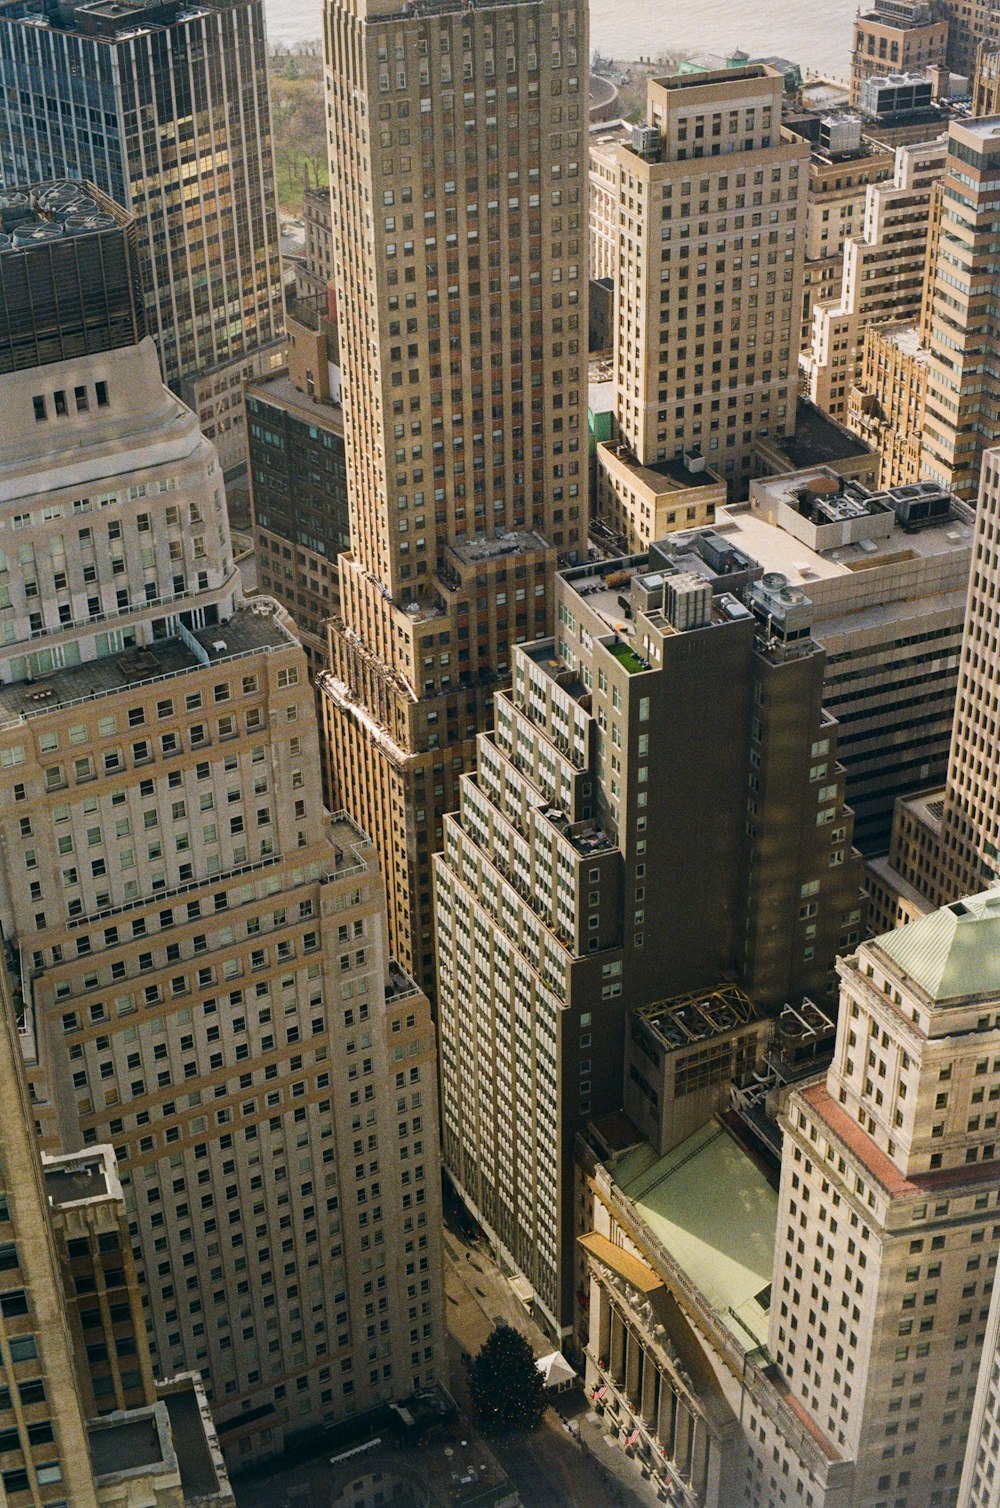 Eine Luftaufnahme einer Stadt mit hohen Gebäuden